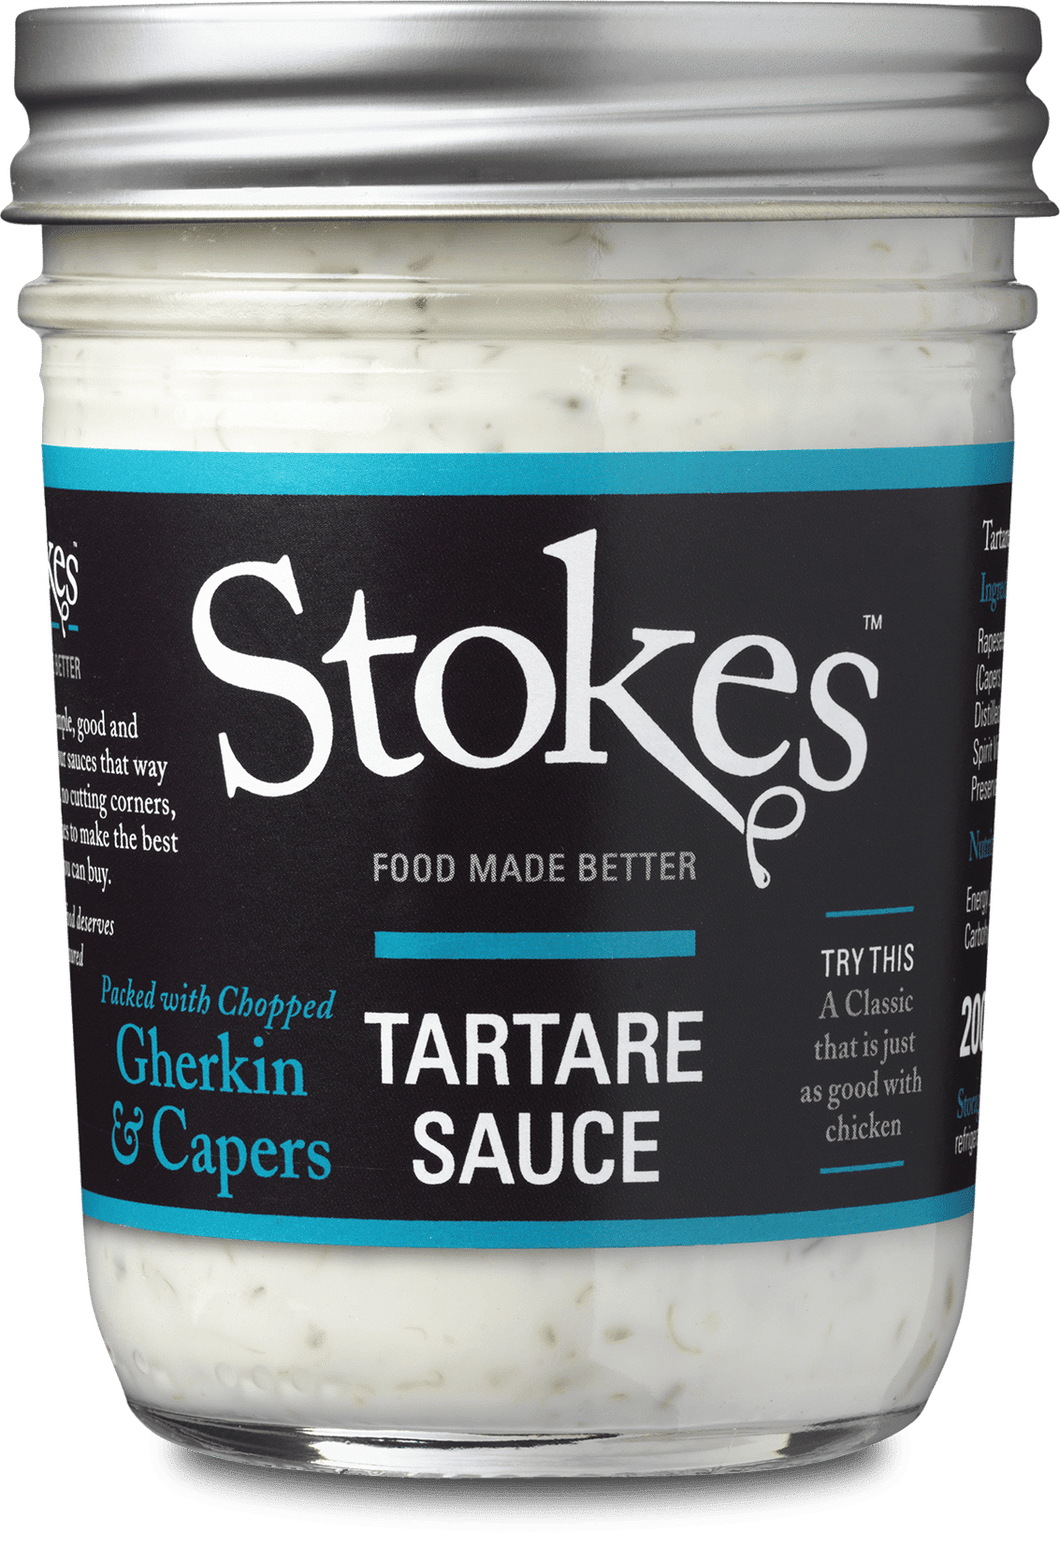 Stokes Tartare Sauce